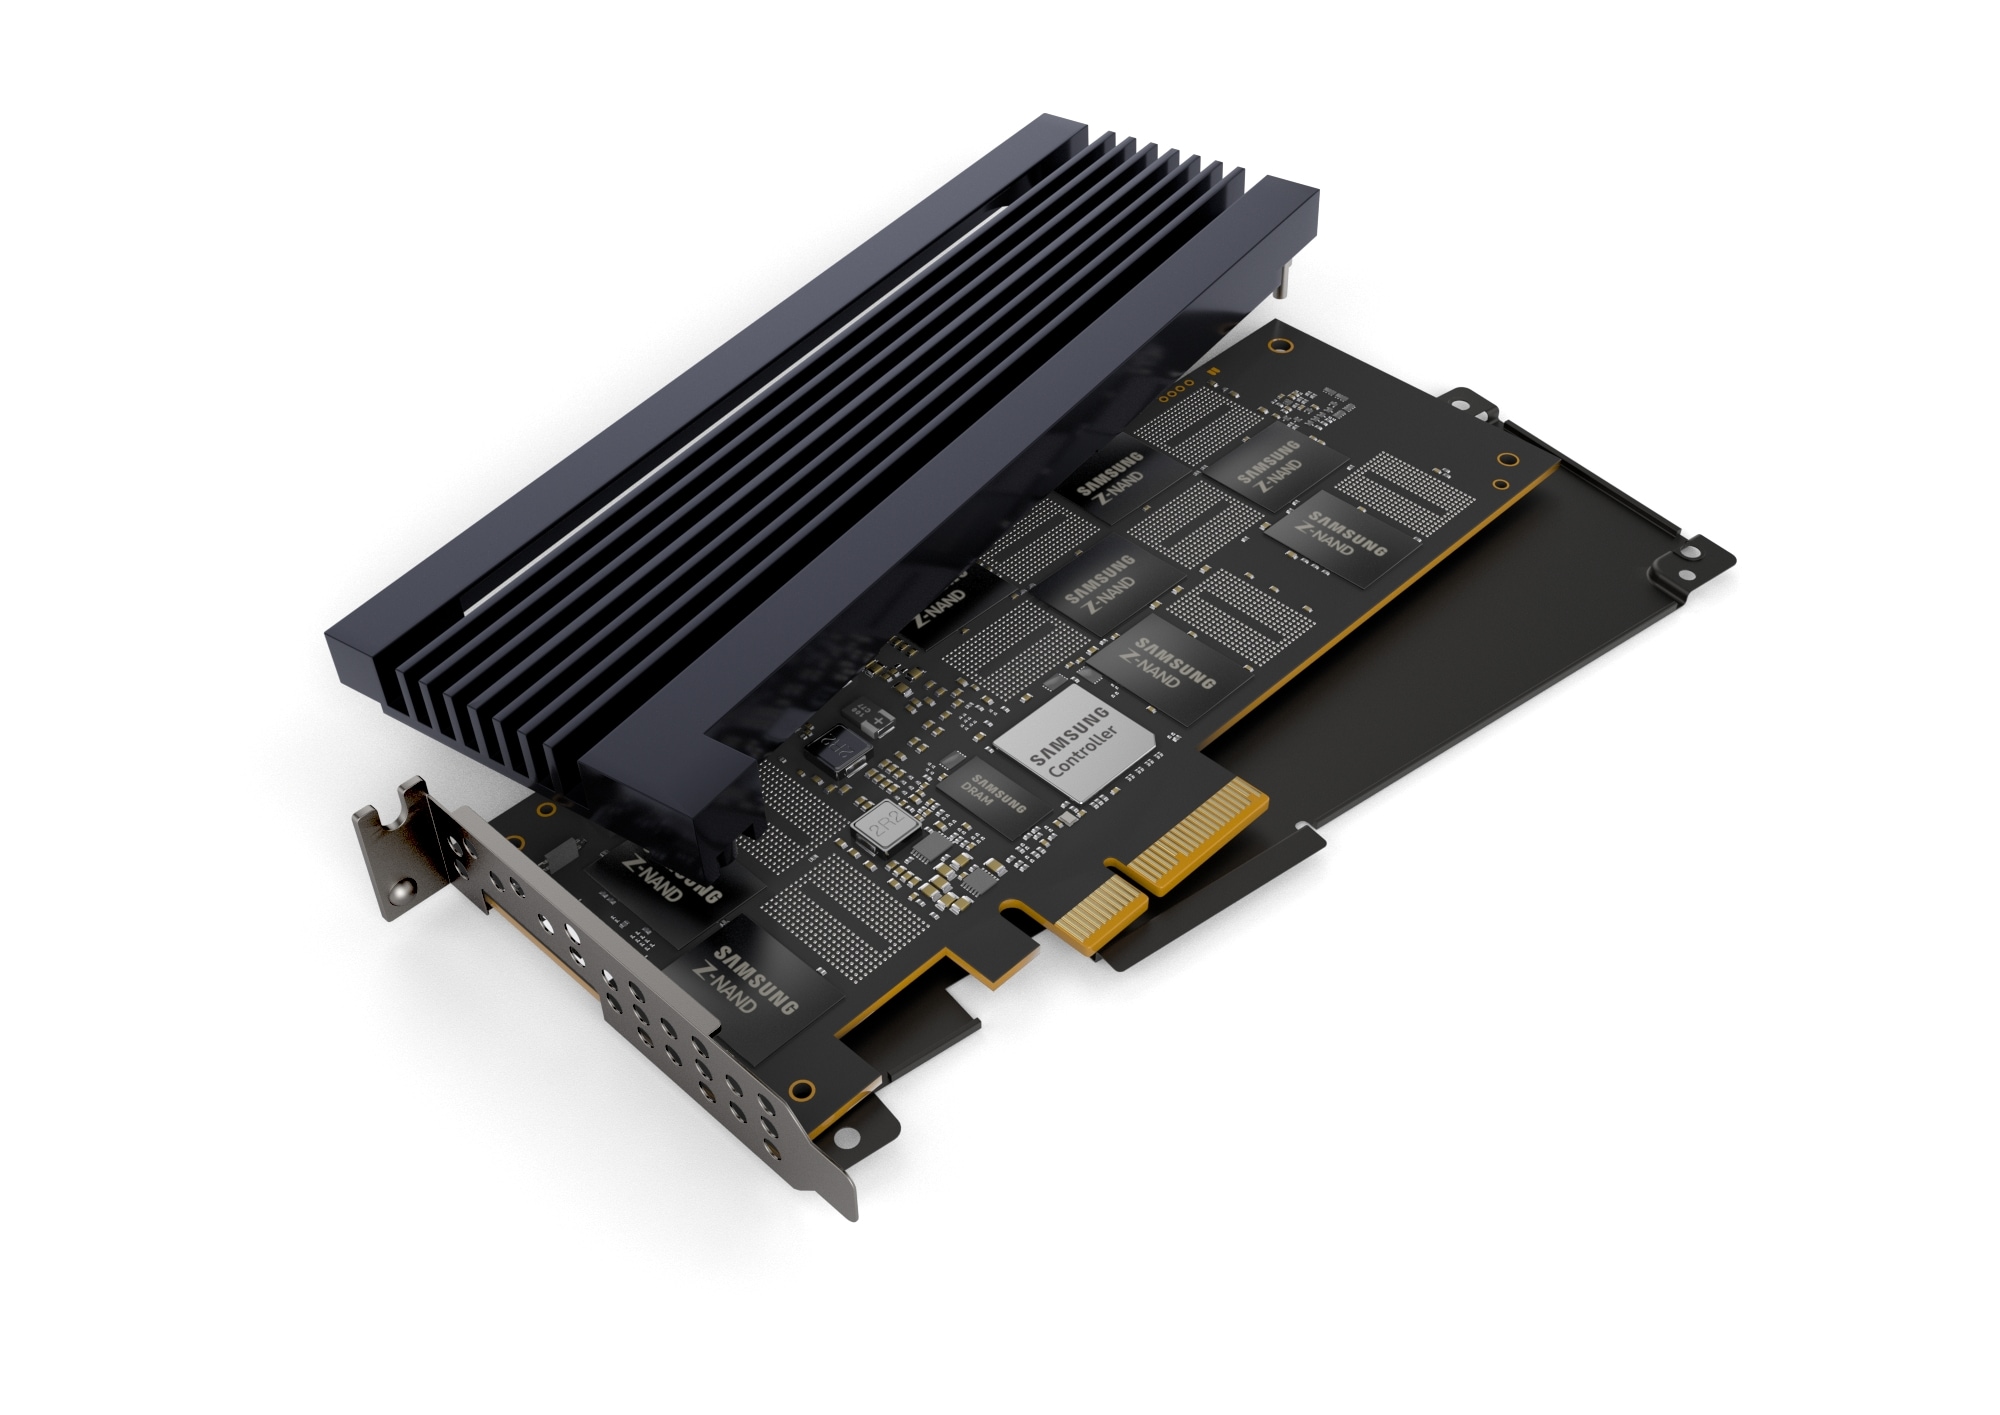 삼성전자가 출시하는 차세대 슈커컴퓨터용 ‘800GB(기가바이트) Z-SSD’ 제품이 분해된 이미지